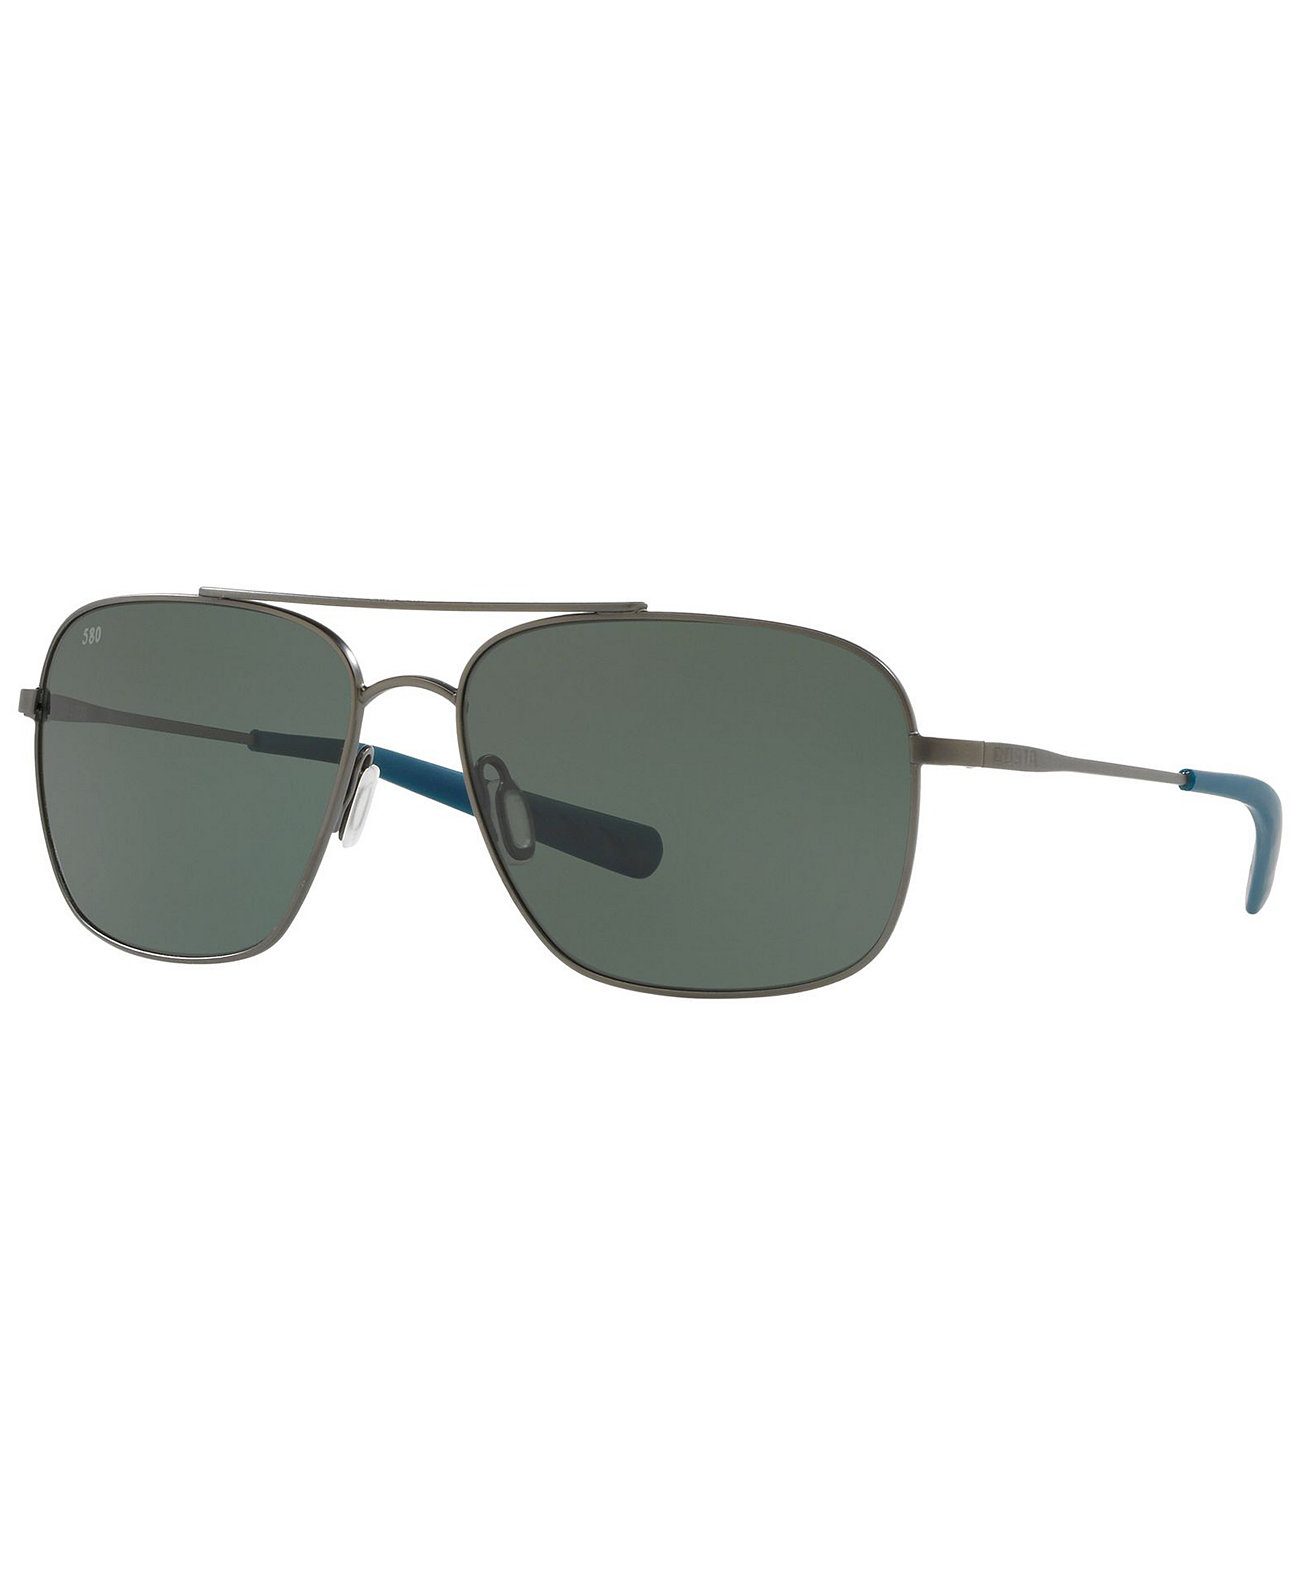 Поляризованные солнцезащитные очки, BLACKFINP COSTA DEL MAR